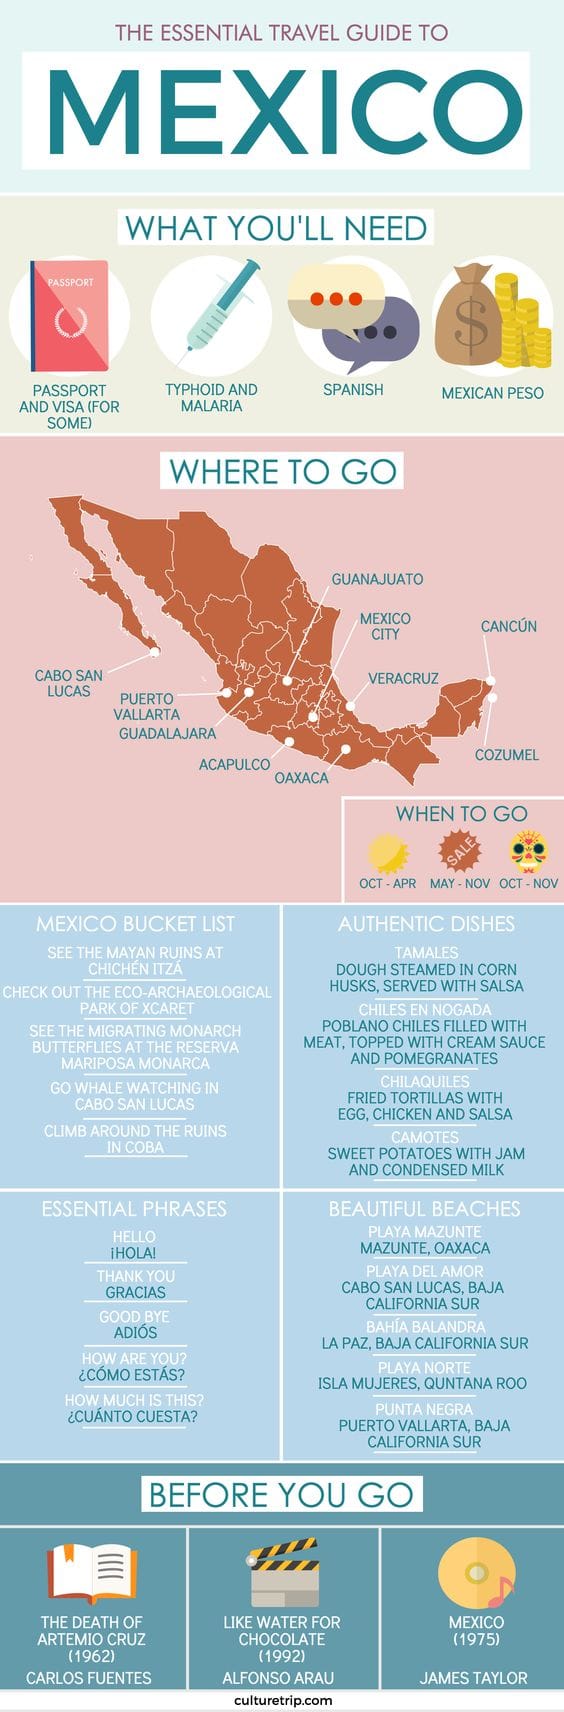 Teach English In Mexico